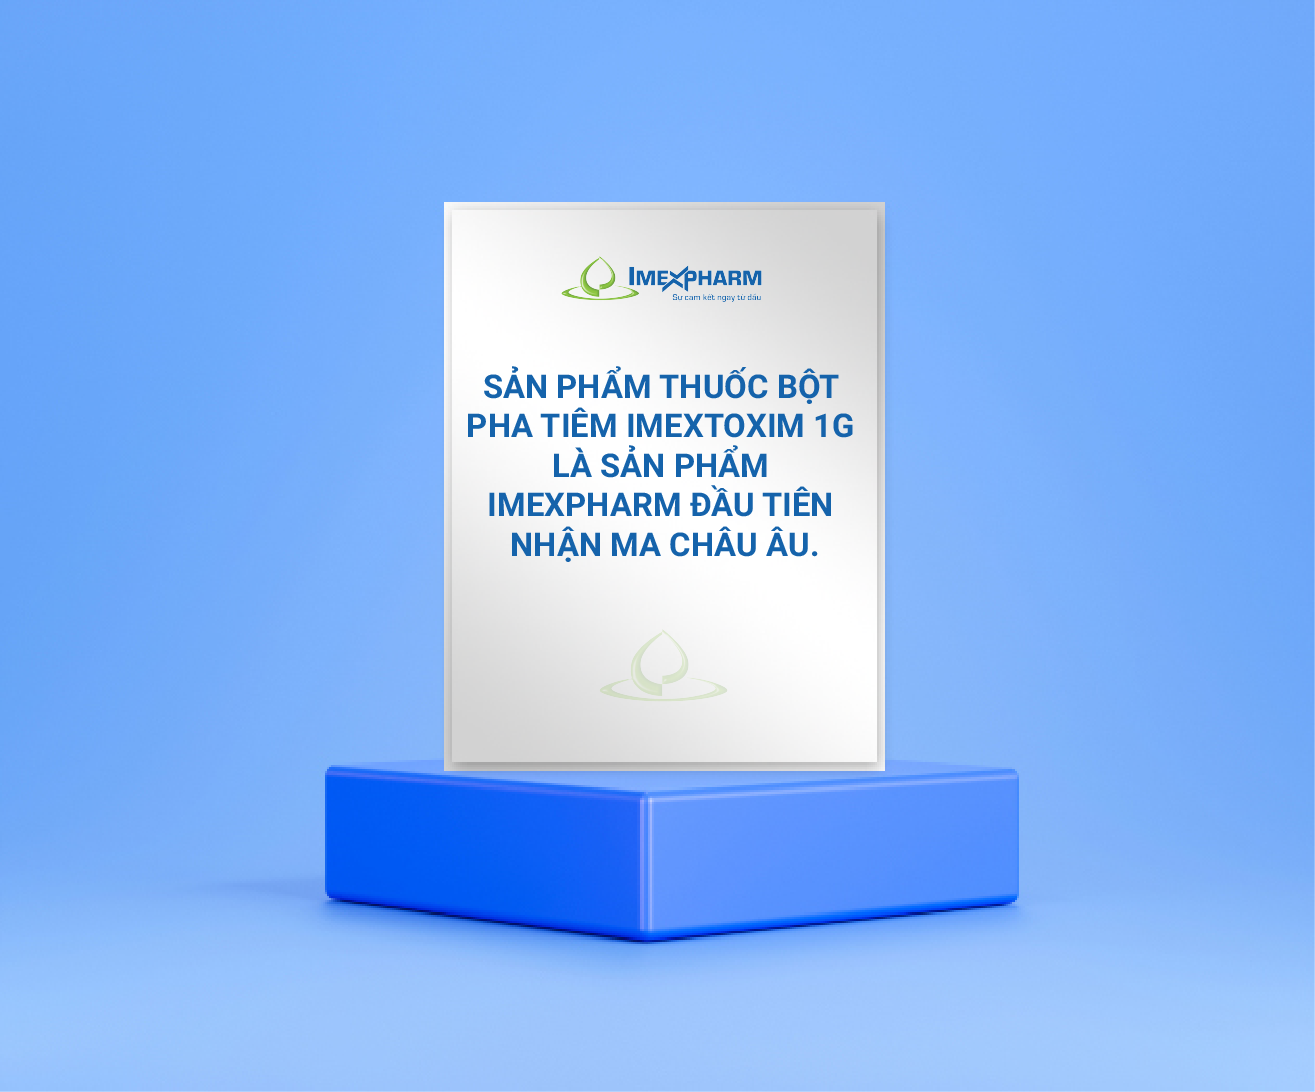 Sản phẩm thuốc bột pha tiêm Imextoxim 1g là sản phẩm Imexpharm đầu tiên nhận MA Châu Âu.